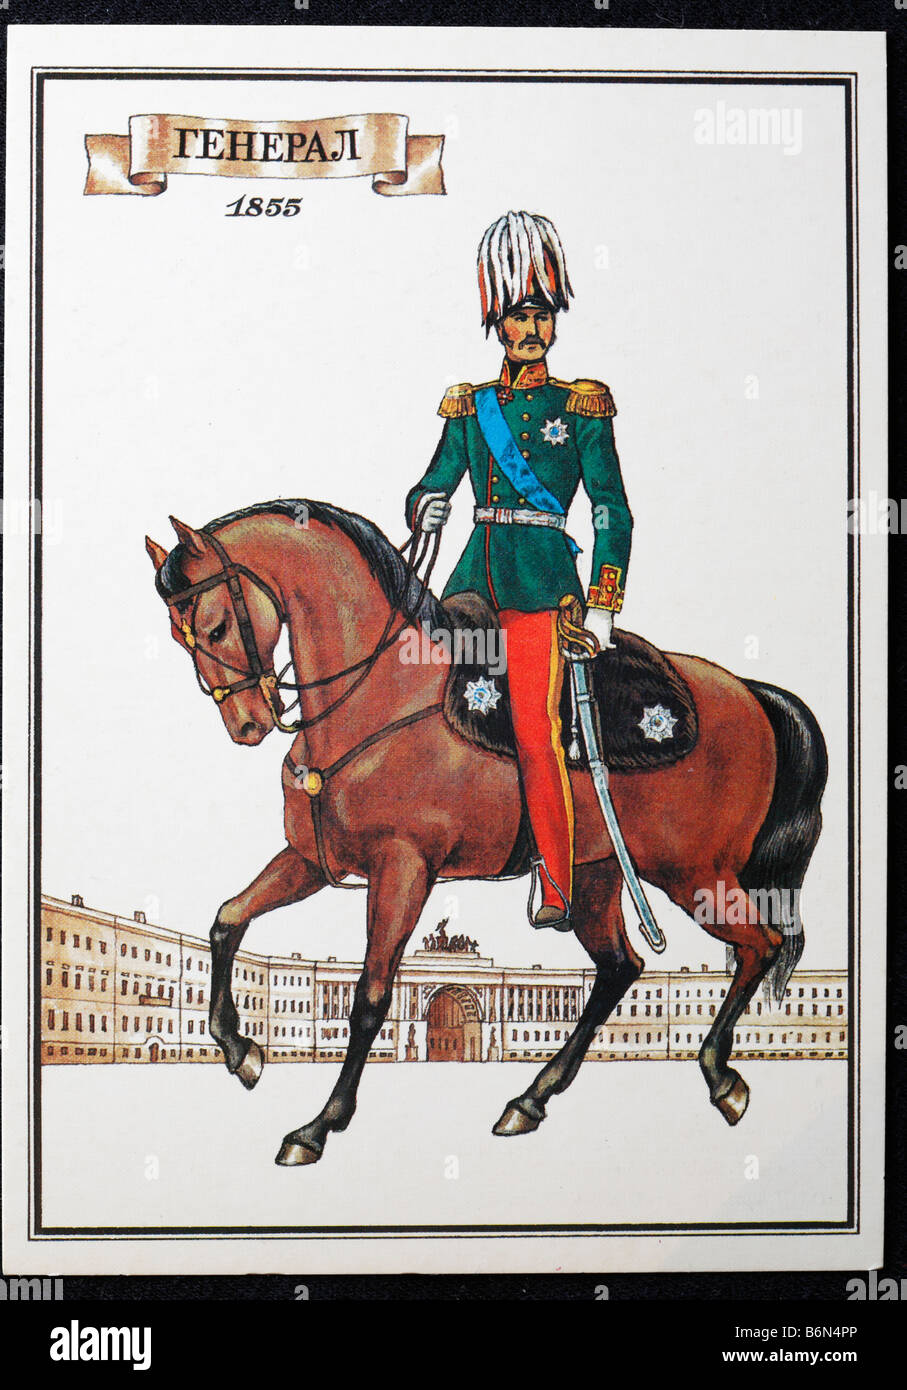 L'uniforme de général de l'armée russe (1855), carte postale, URSS, 1986 Banque D'Images